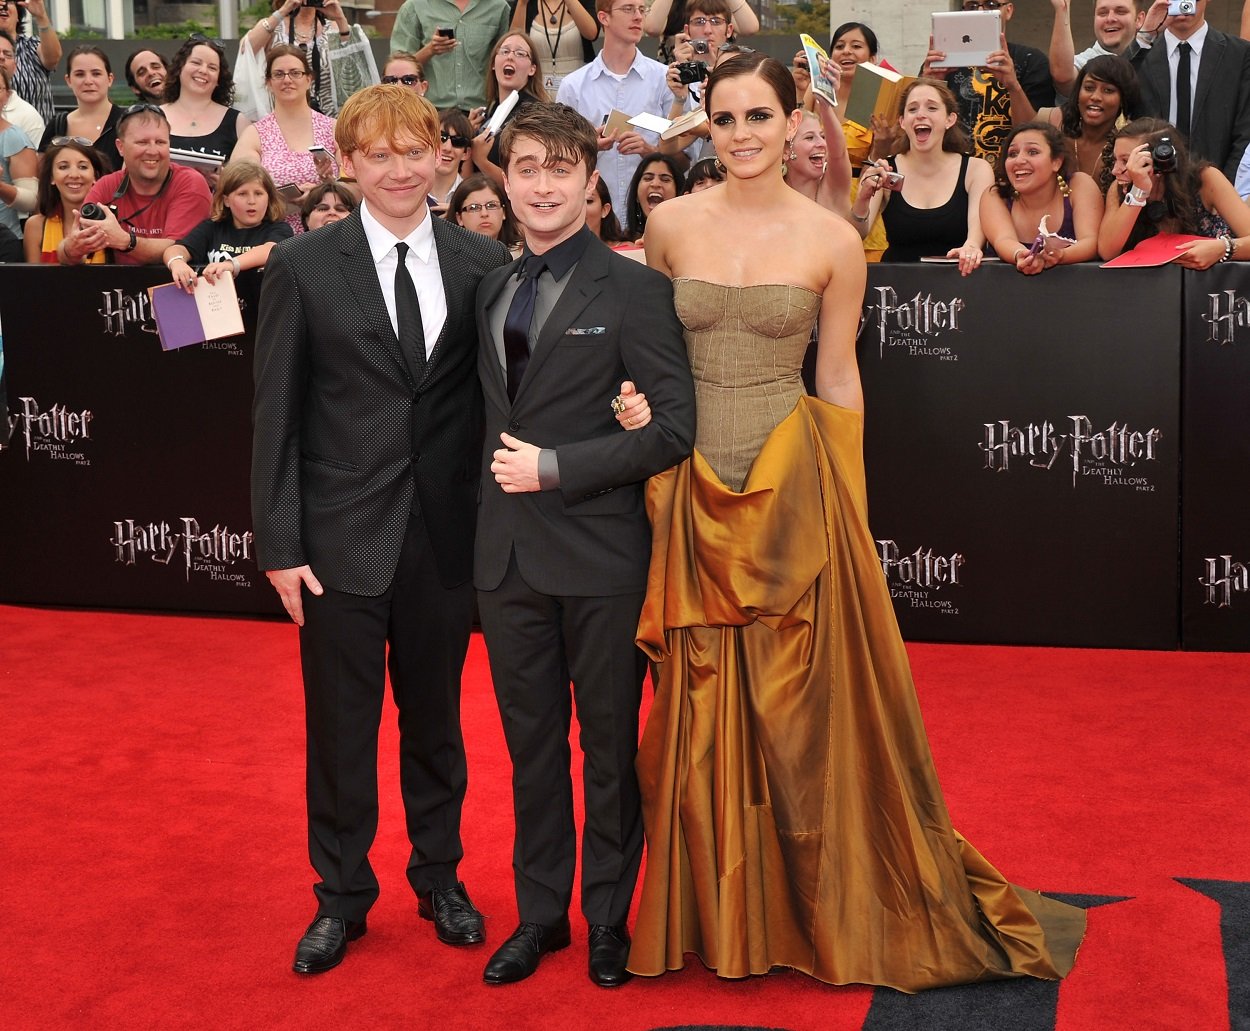 Rupert Grint, Daniel Radcliffe, and Emma Watson